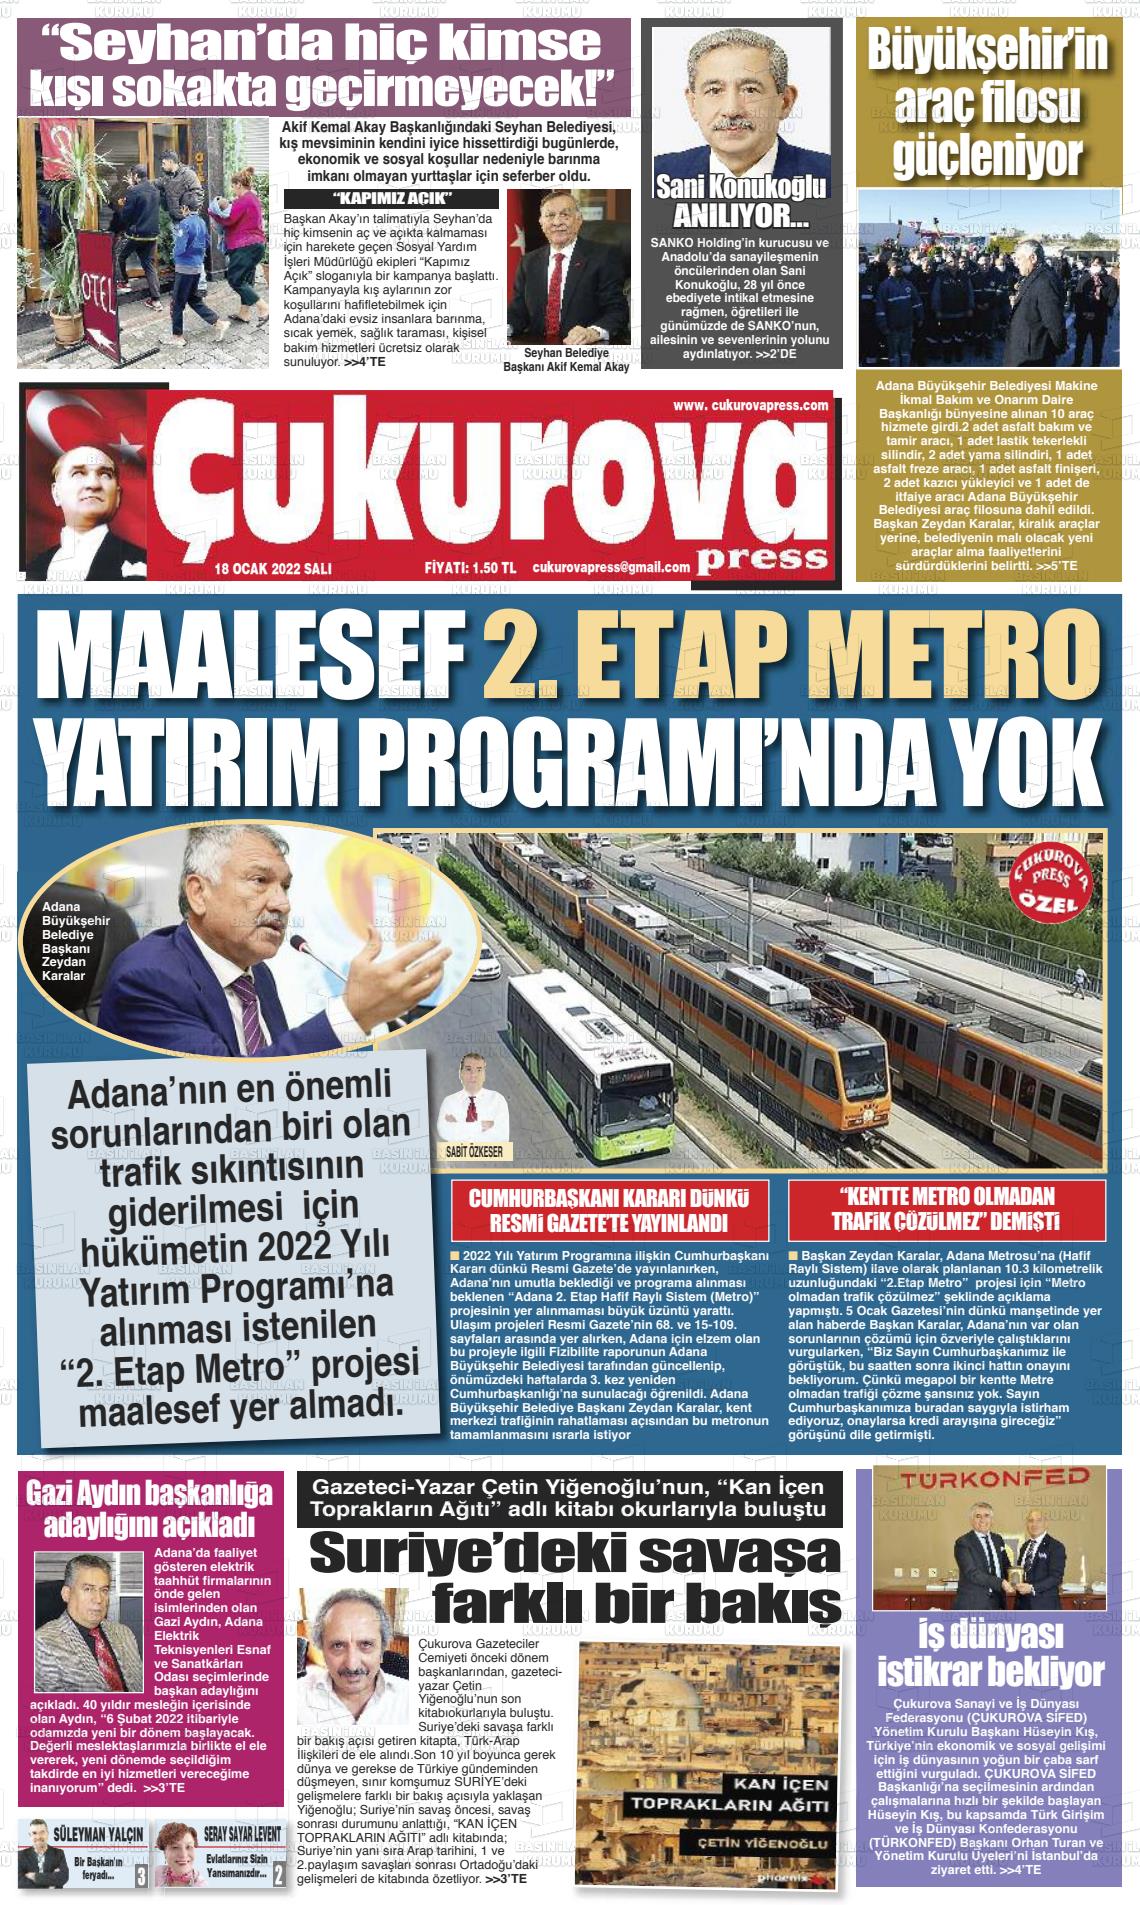 18 Ocak 2022 Çukurova Press Gazete Manşeti